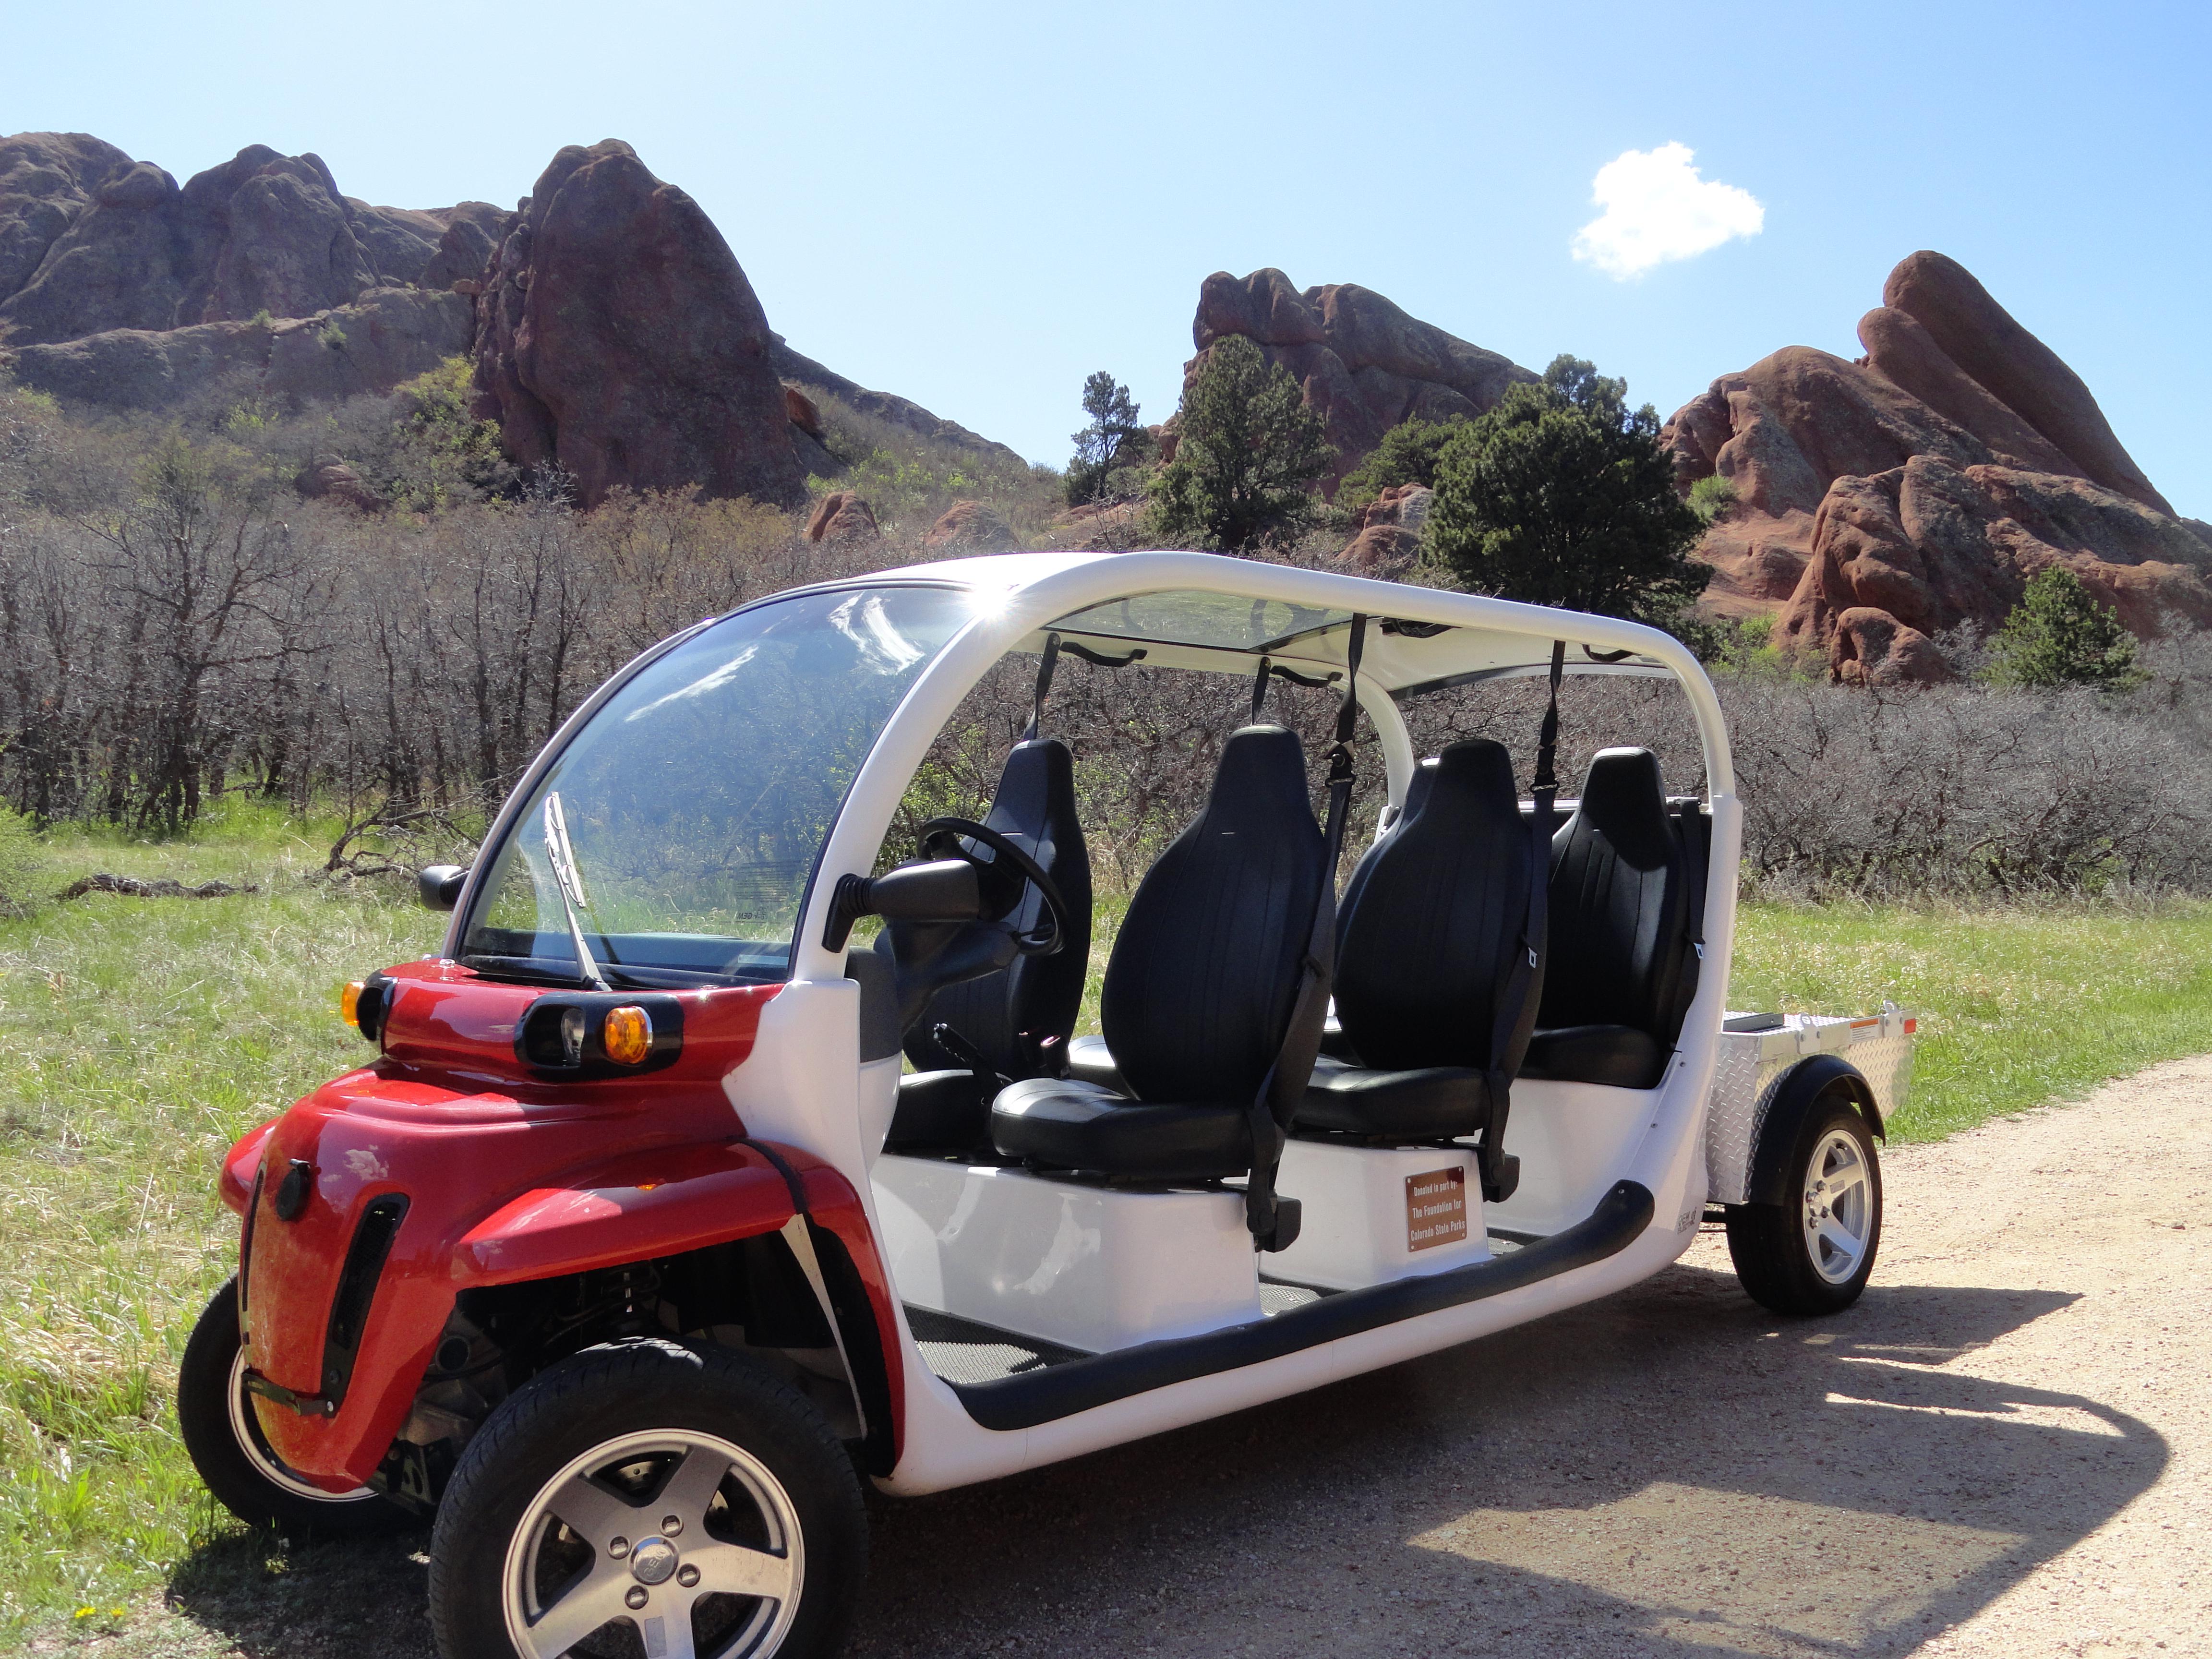 Rox-Ride: 5 Passenger Electric Golf Cart